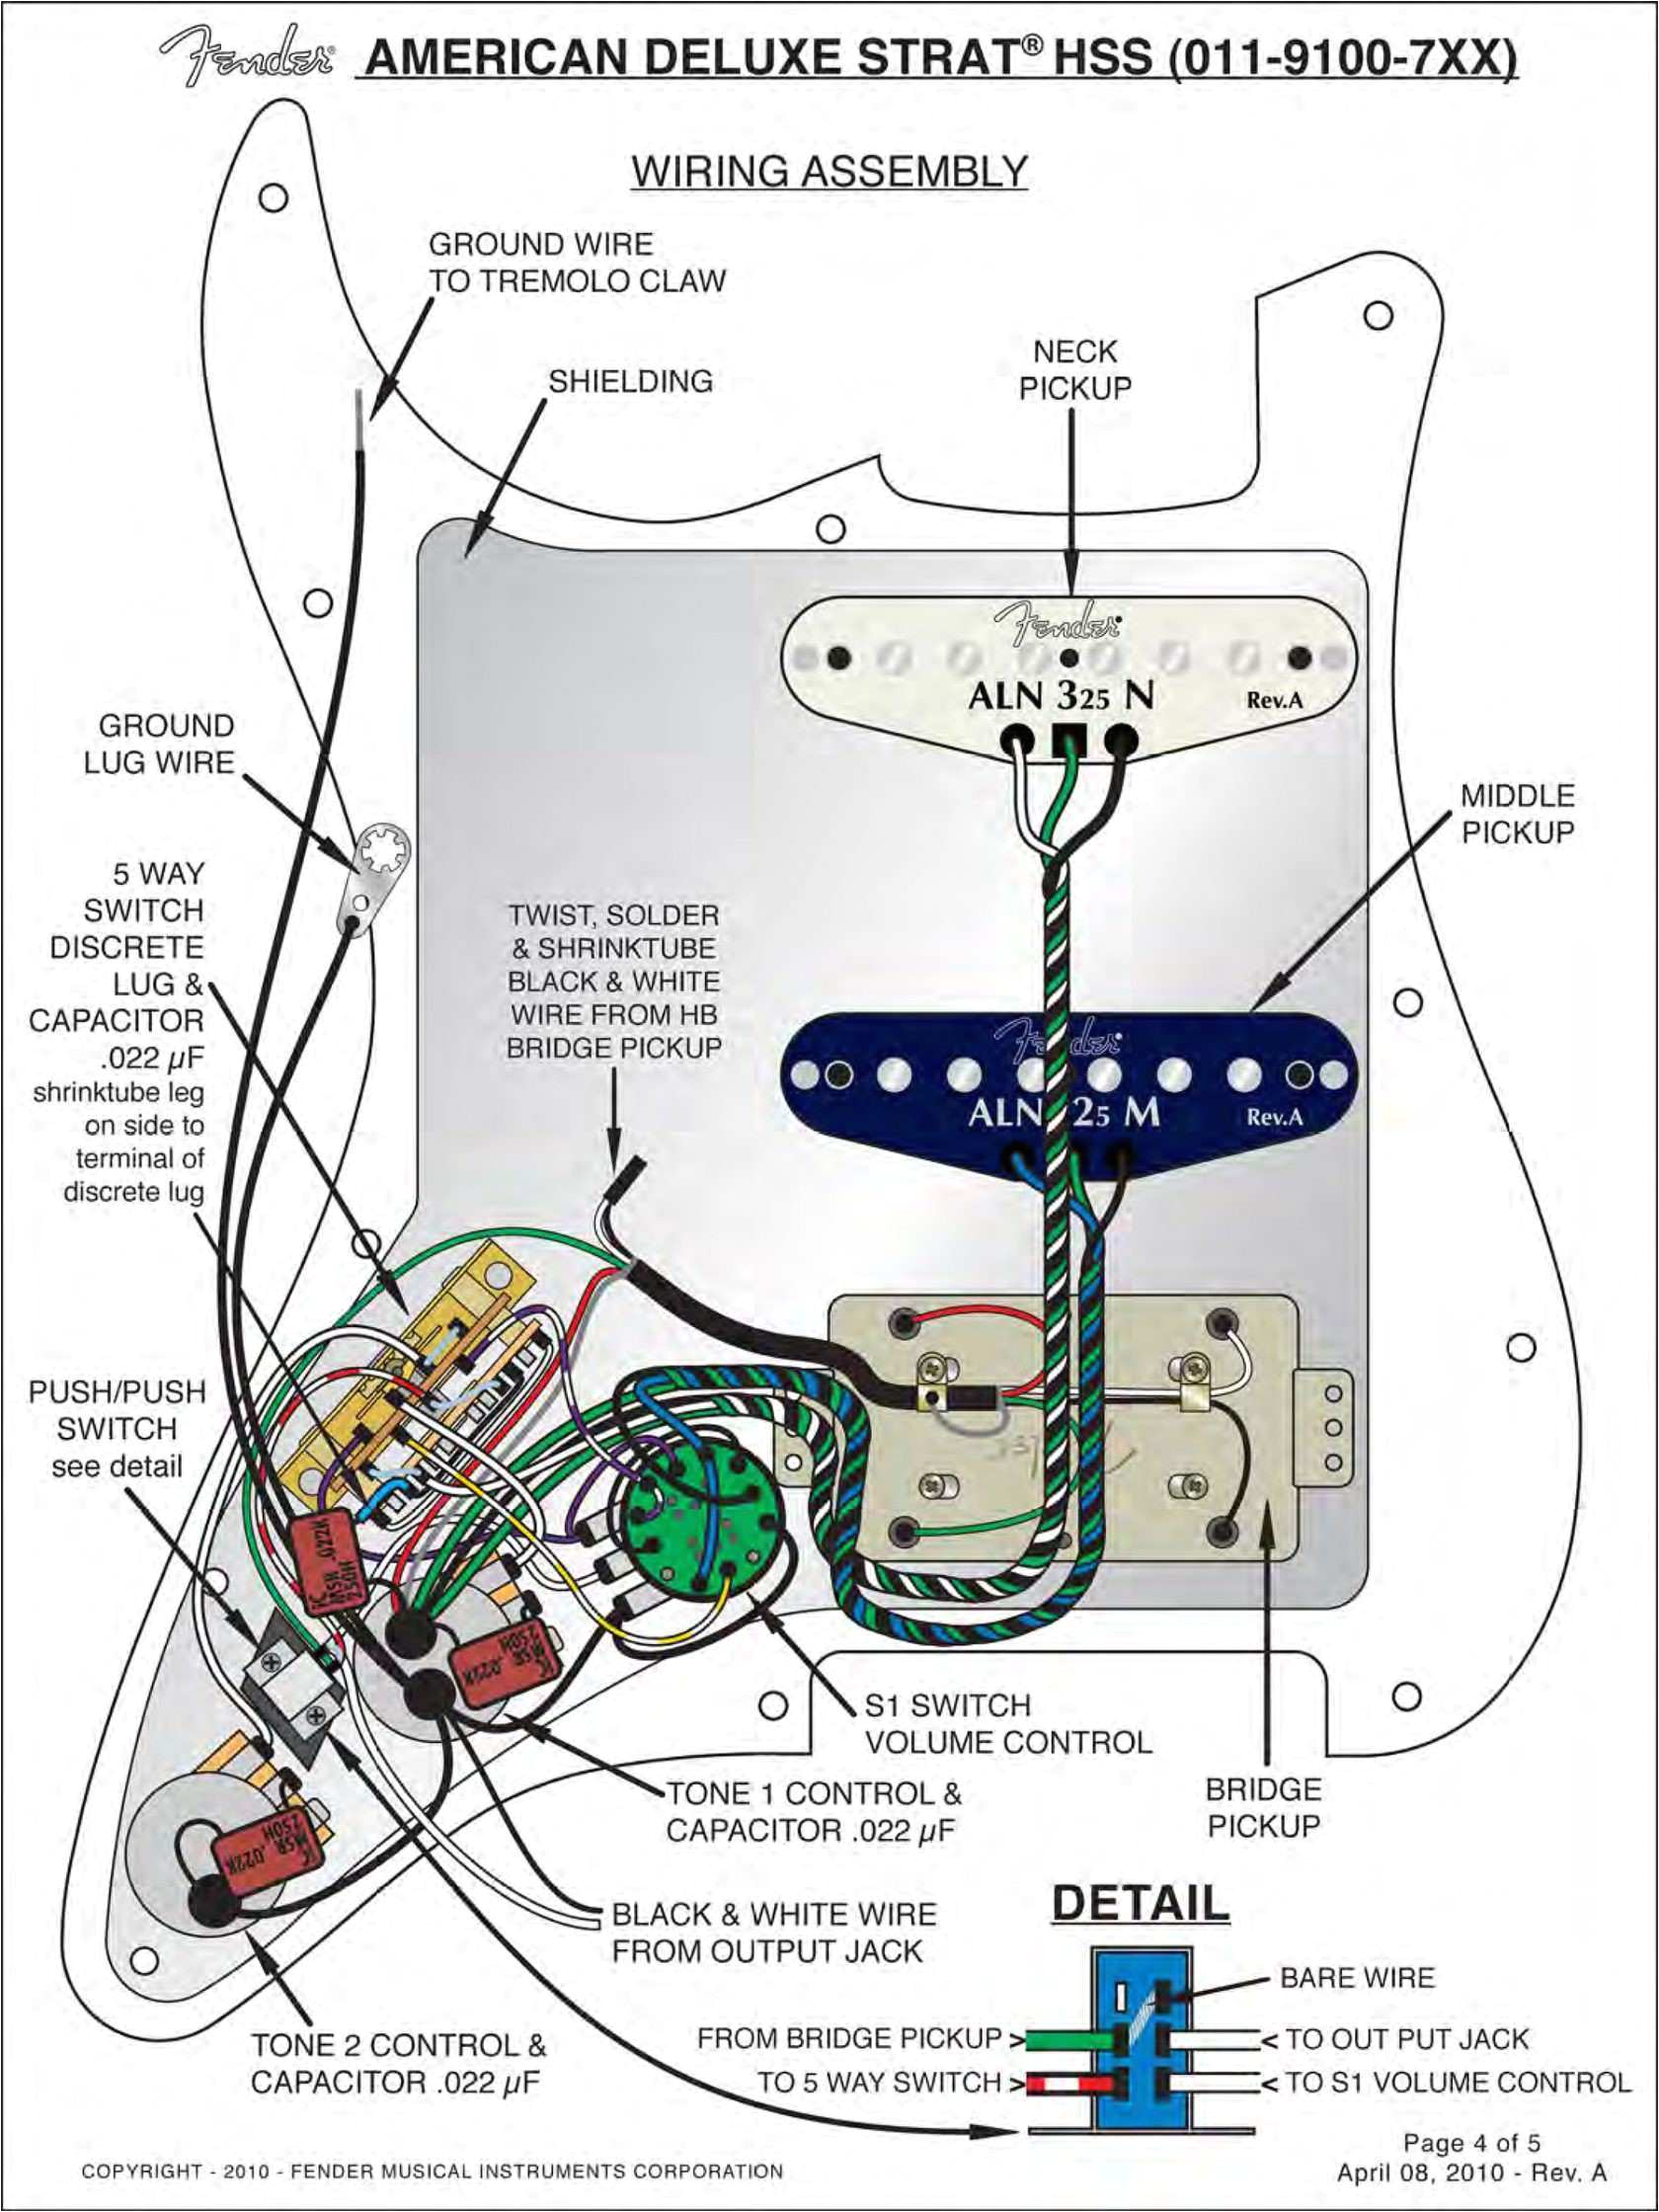 fender scn wiring diagram wiring diagram inside fender stratocaster noiseless pickup wiring diagram fender noiseless strat wiring diagrams